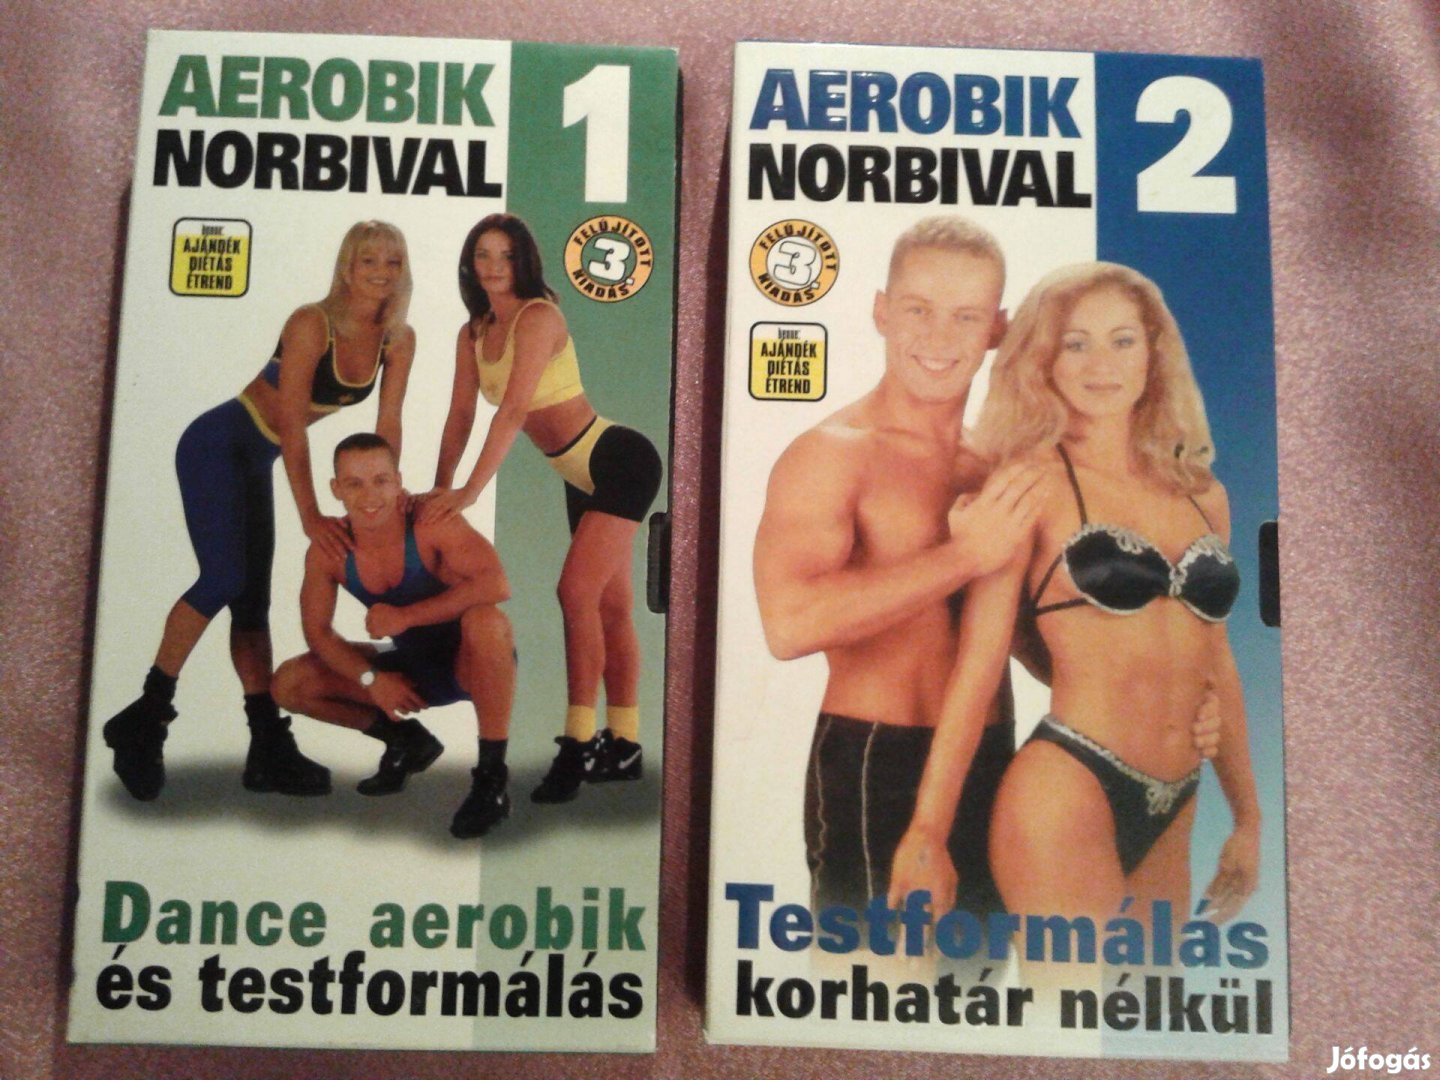 2 db VHS kazetta Aerobik Norbival címmel csomagban